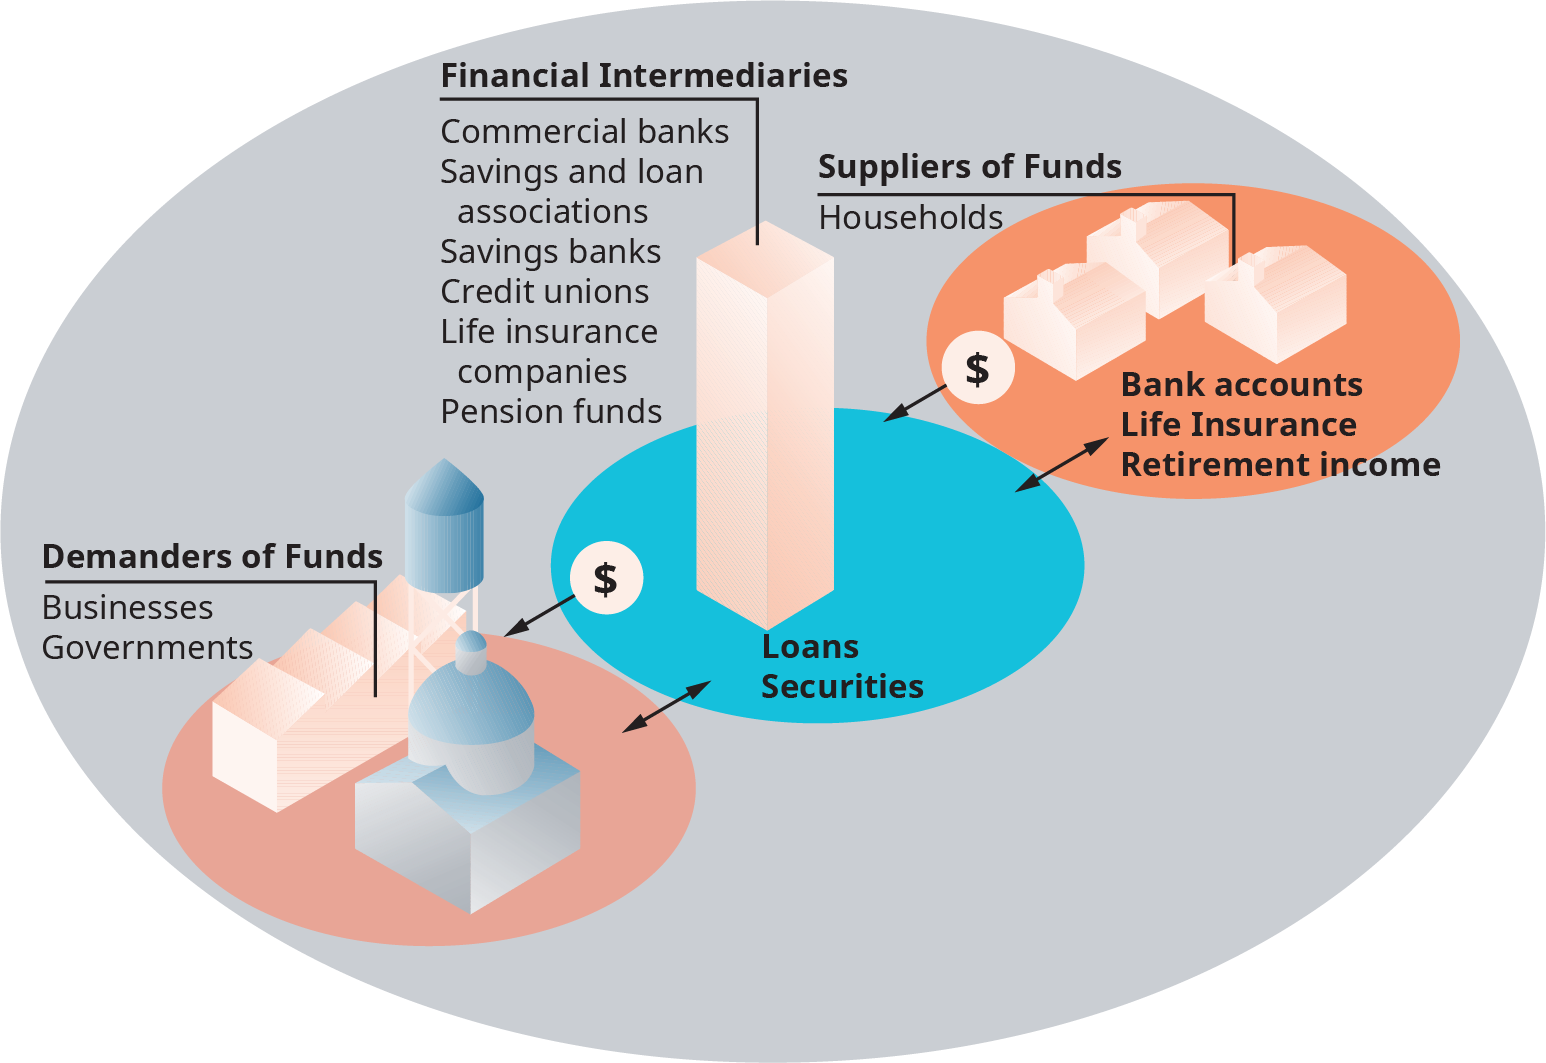 图表的中心标有 “金融中介机构”。 中心的两侧都有插图。 左边是资金需求者，右边是资金提供者。 在金融中介机构下，其内容如下：商业银行、储蓄和贷款协会、储蓄银行、信用合作社、人寿保险公司和养老基金。 箭头从这里来回指向资金需求者，箭头被标记为贷款，证券。 资金需求者被称为企业；政府。 箭头来自金融中介机构和资金提供者来回指向；箭头标有银行账户、人寿保险和退休收入。 资金的提供者被列为家庭。